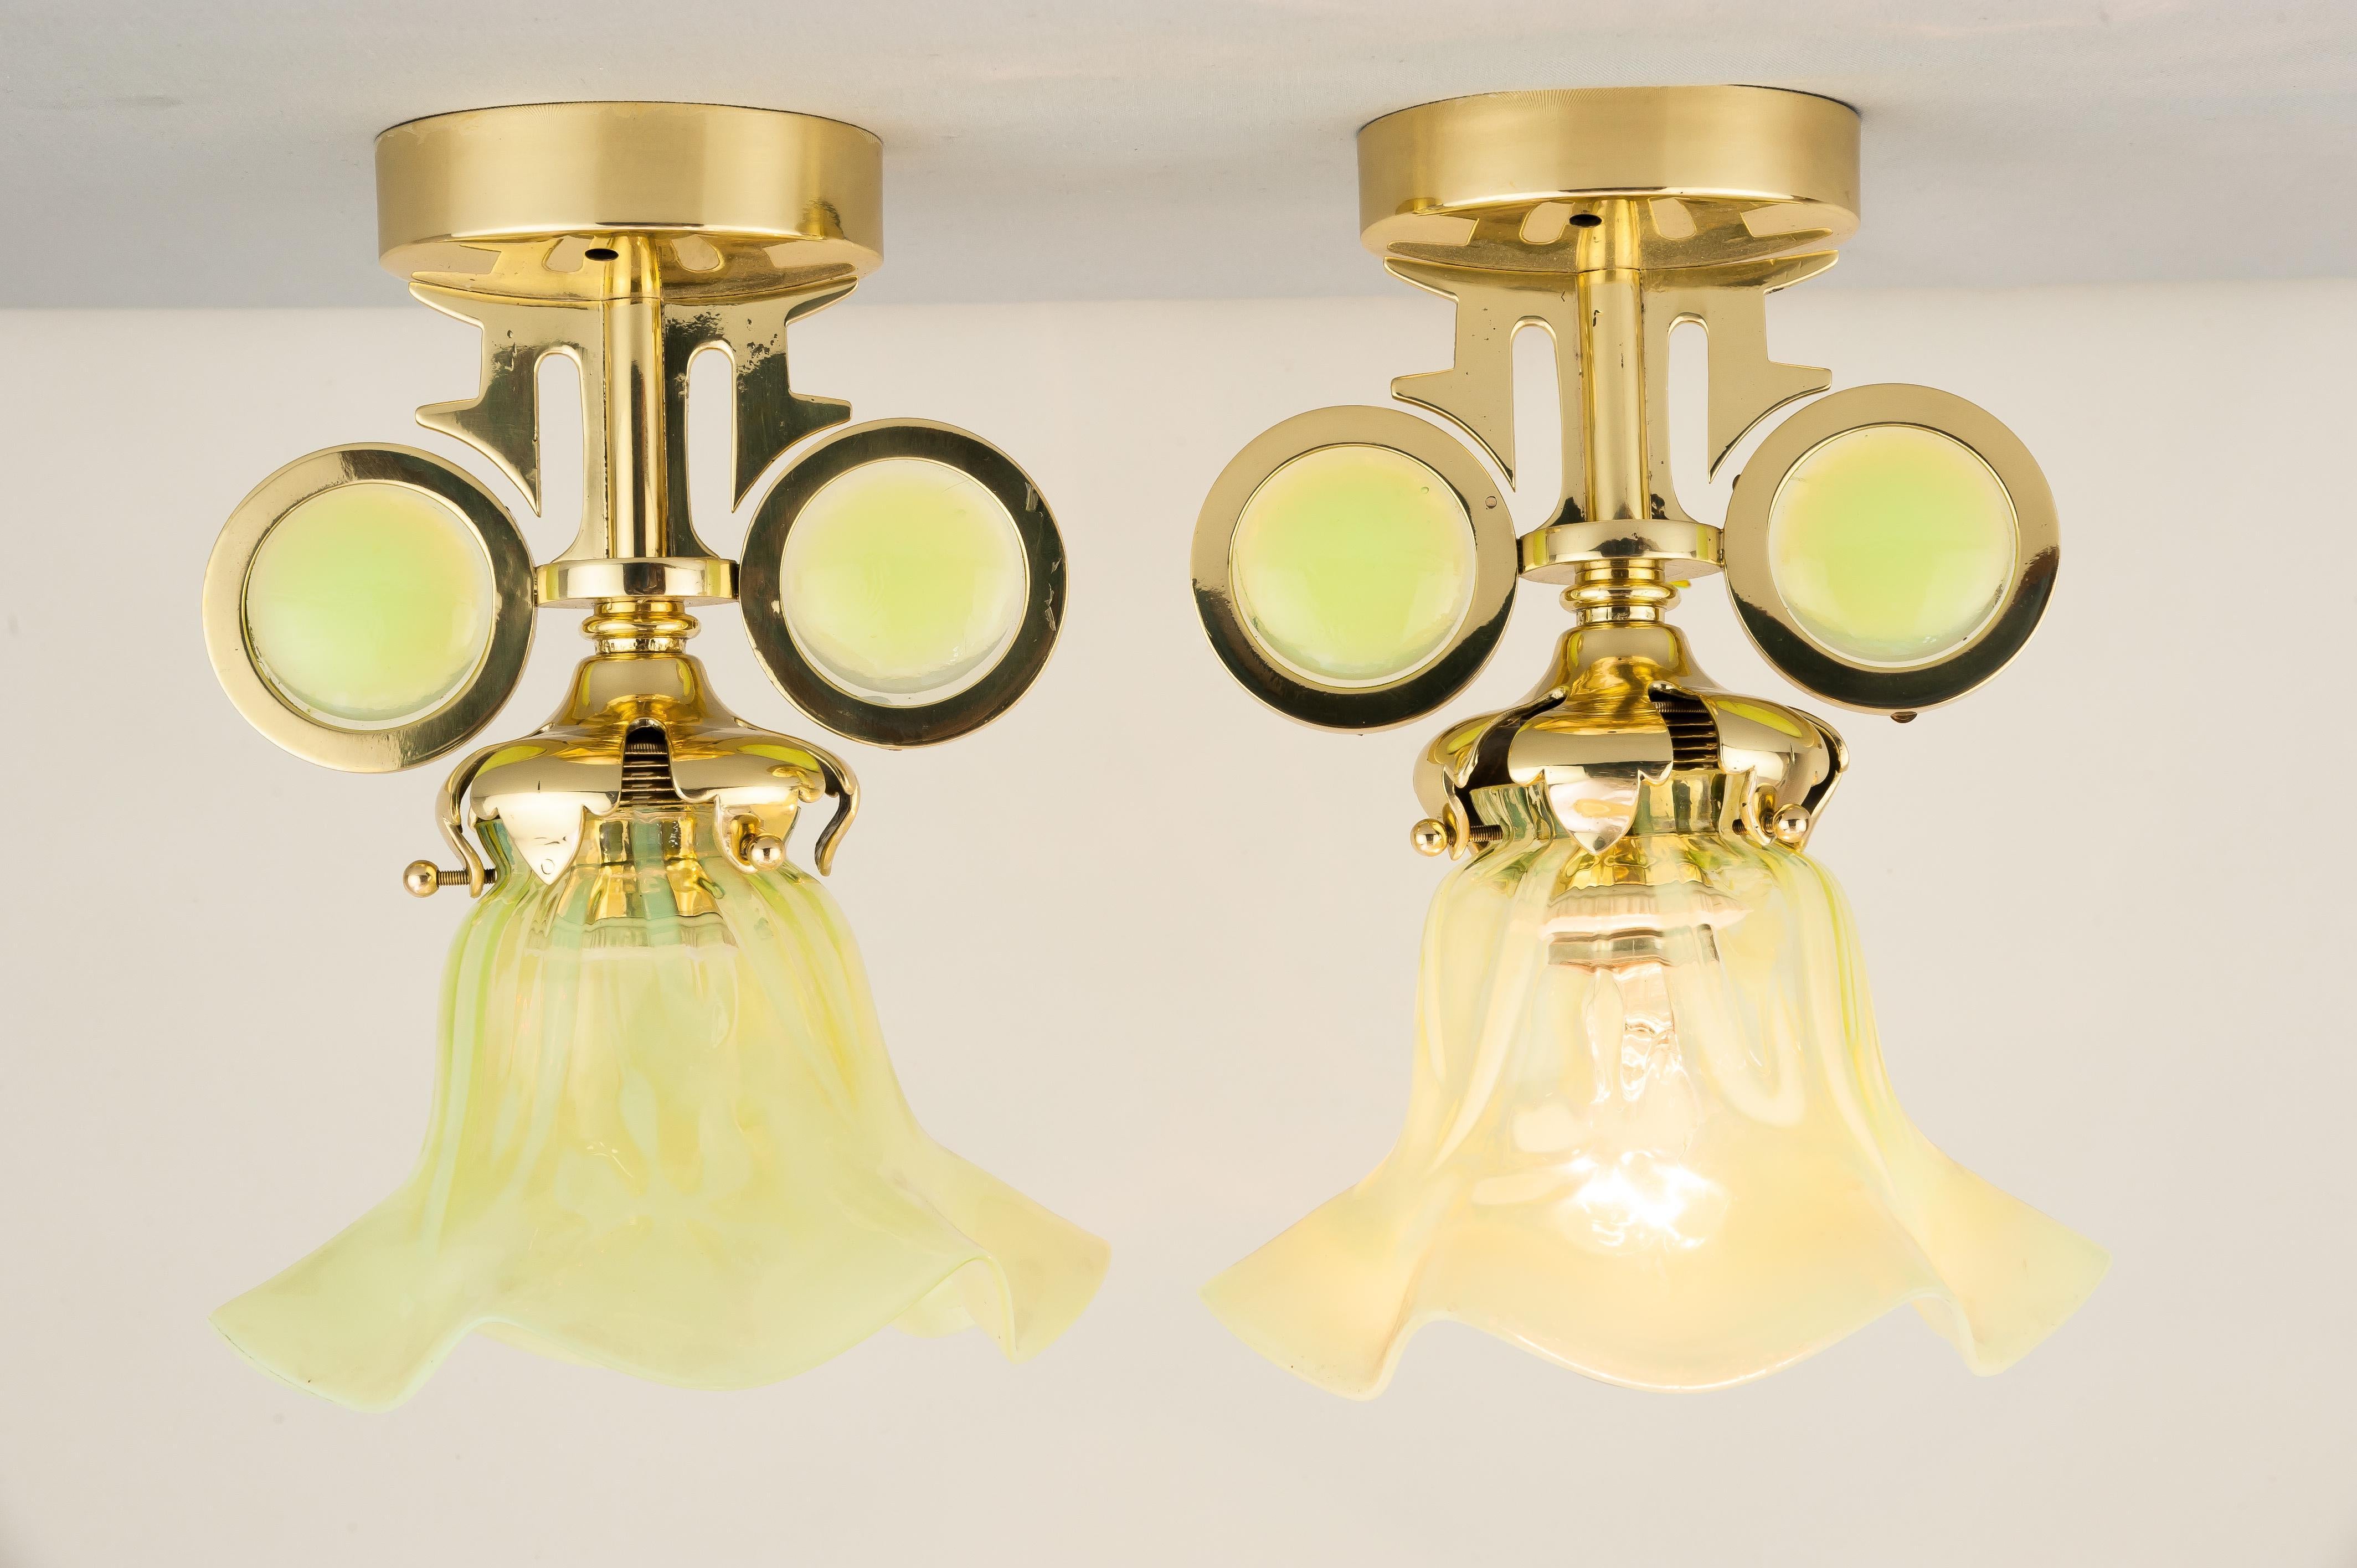 Zwei Hängelampen um 1910 mit originalen Opalglasschirmen
Poliert und einbrennlackiert.